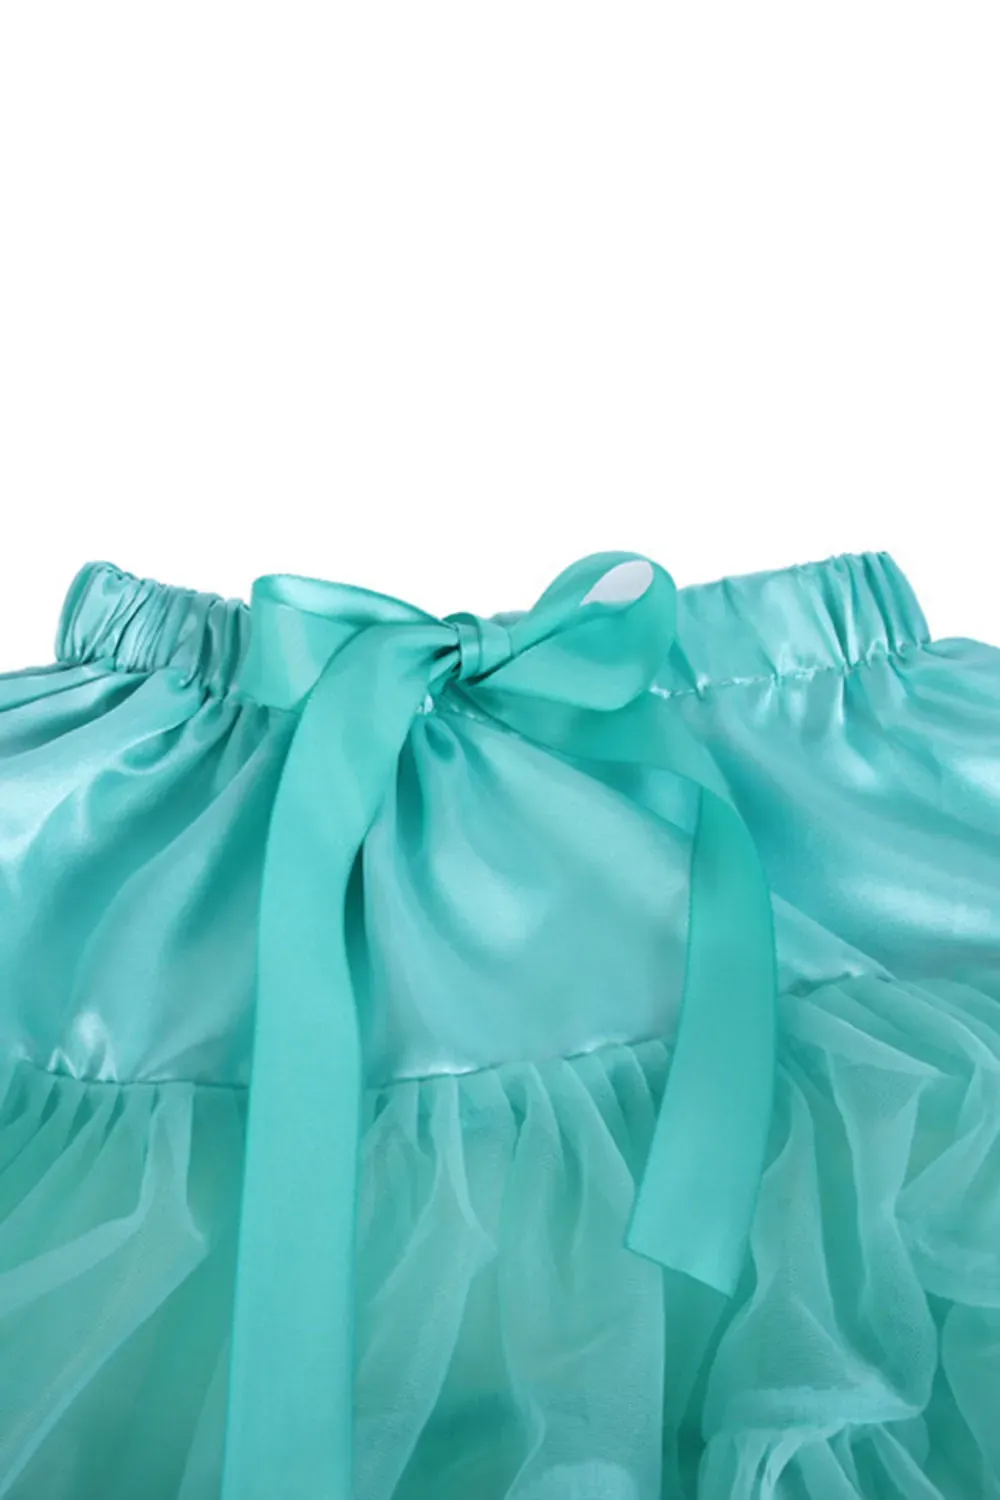 Women's Retro Dancewear Adult Tutu Skirt Fluffy Pettiskirt Princess Ballet Skirt Party Cheap Petticoat for Wedding CPA835